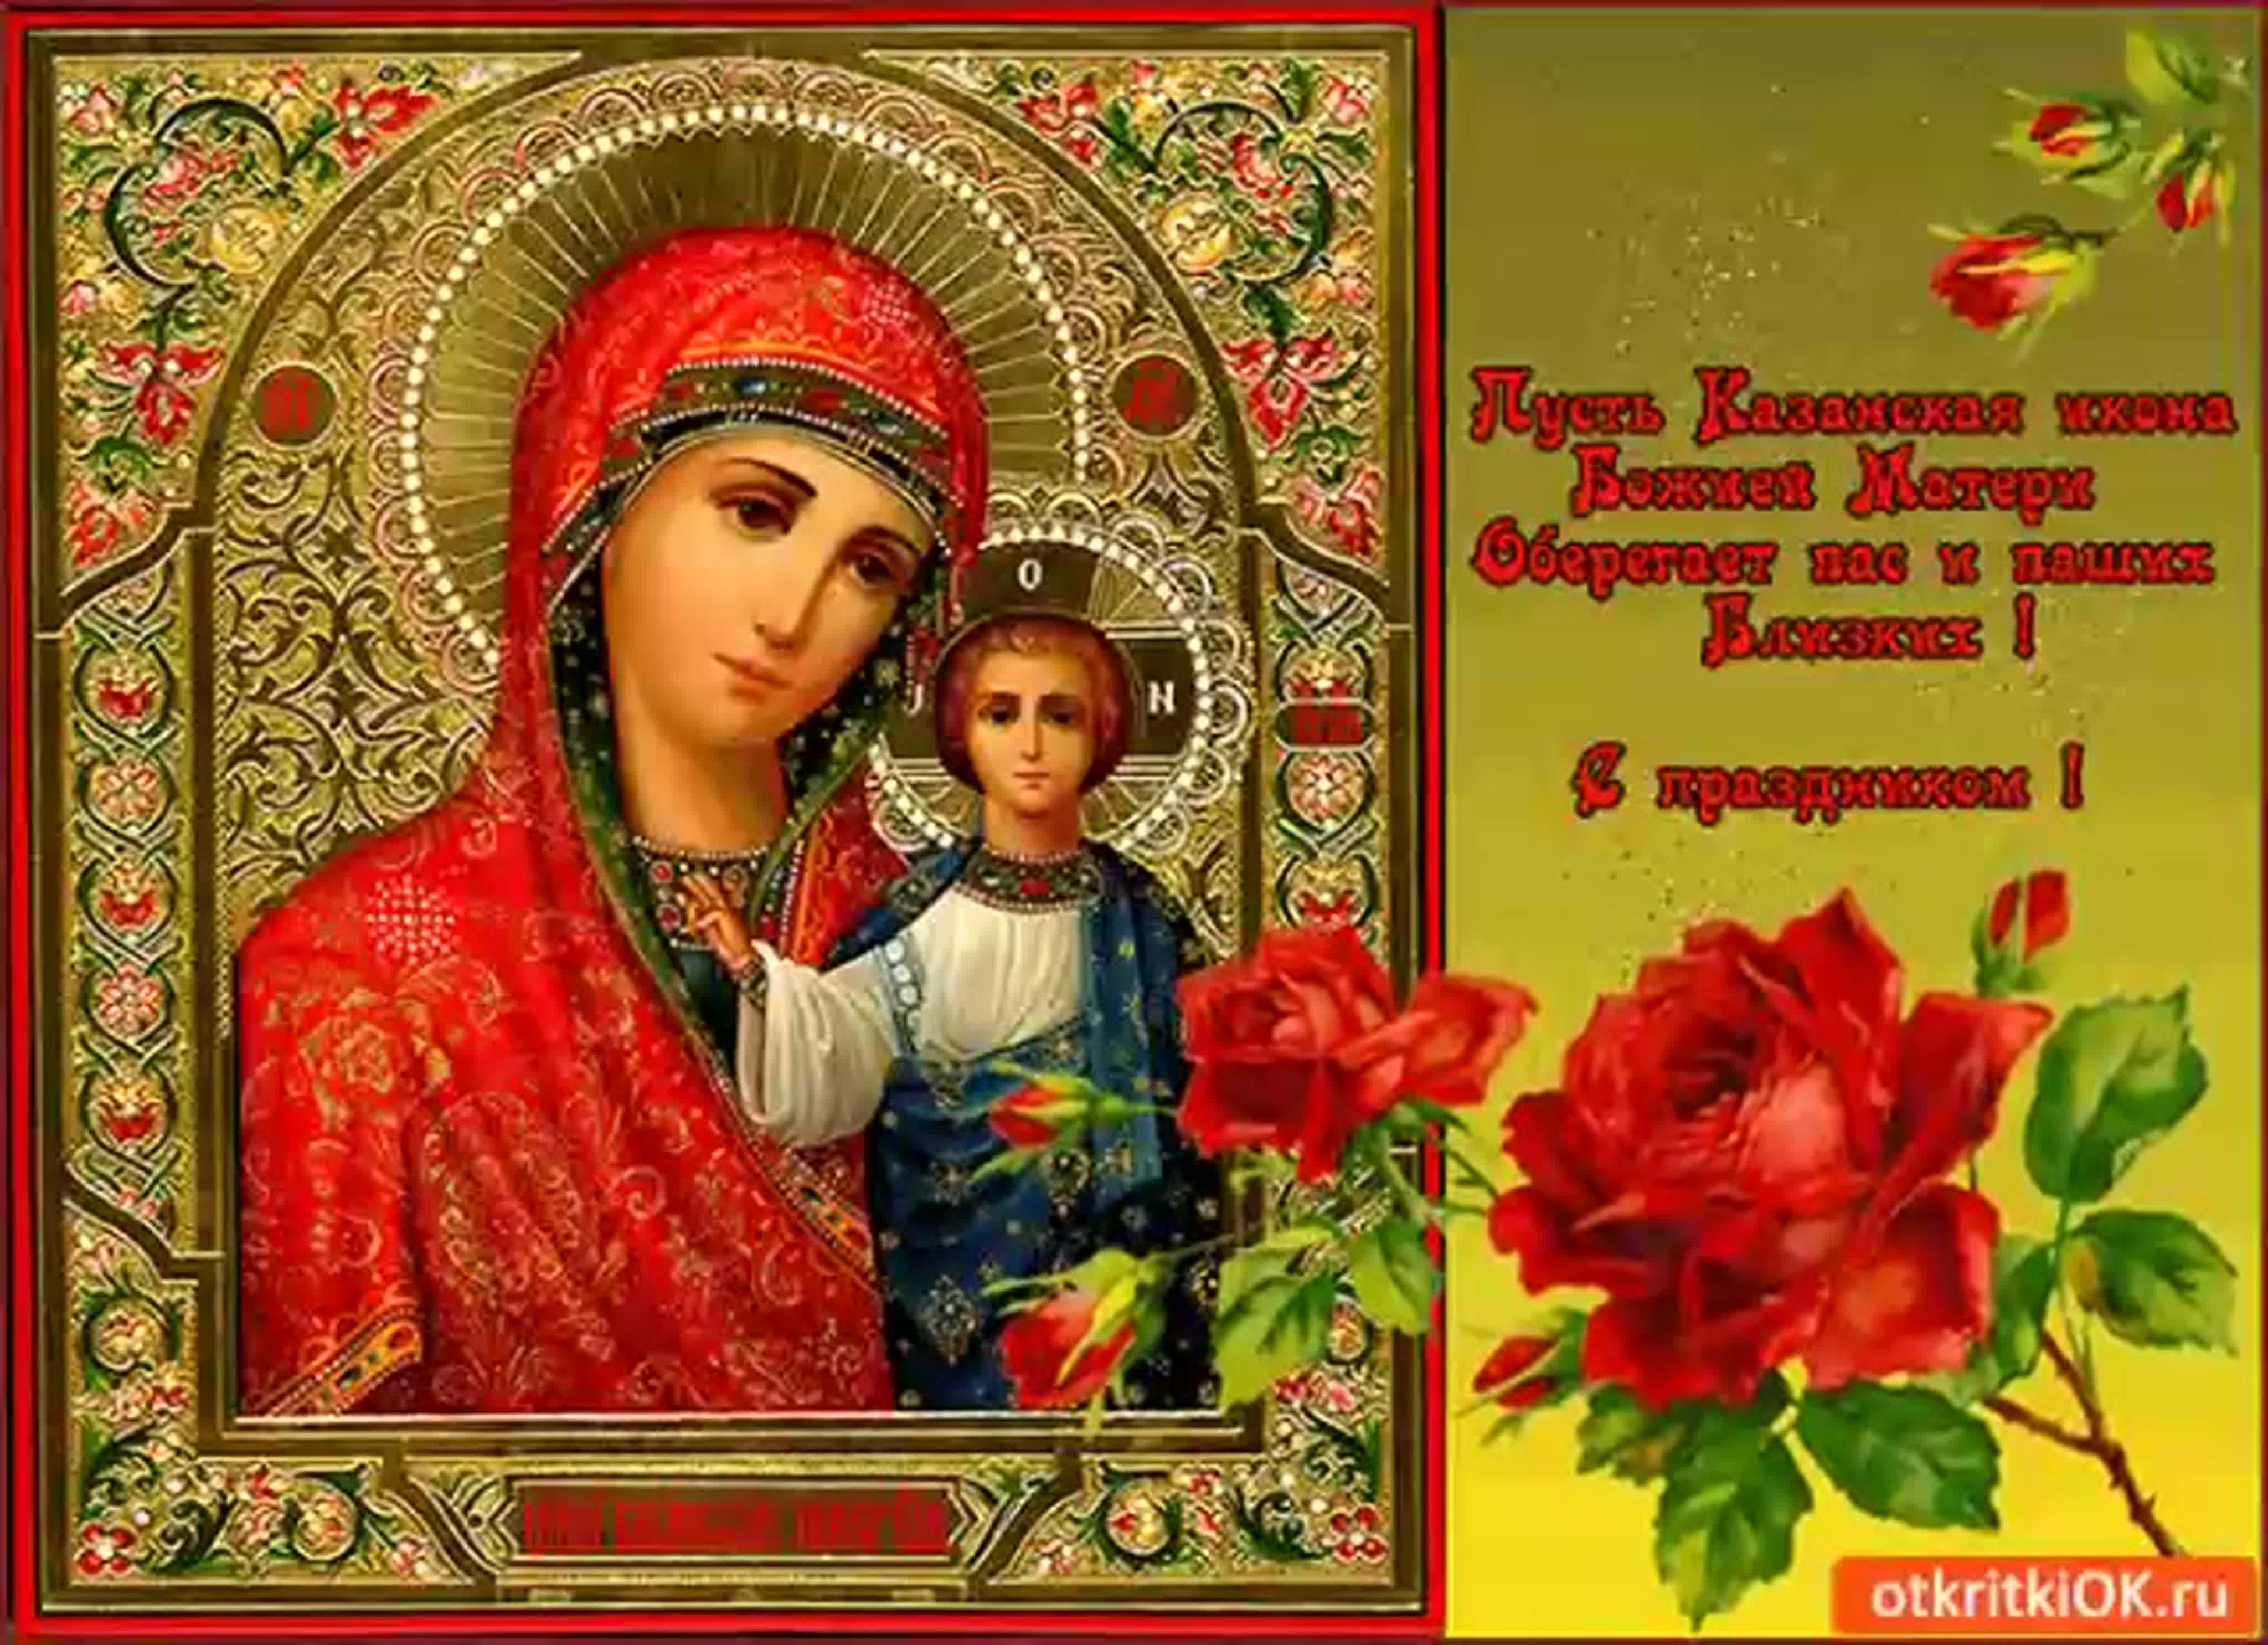 Казанская икона Божией Матери в Великую Отечественную войну. Легенды и факты